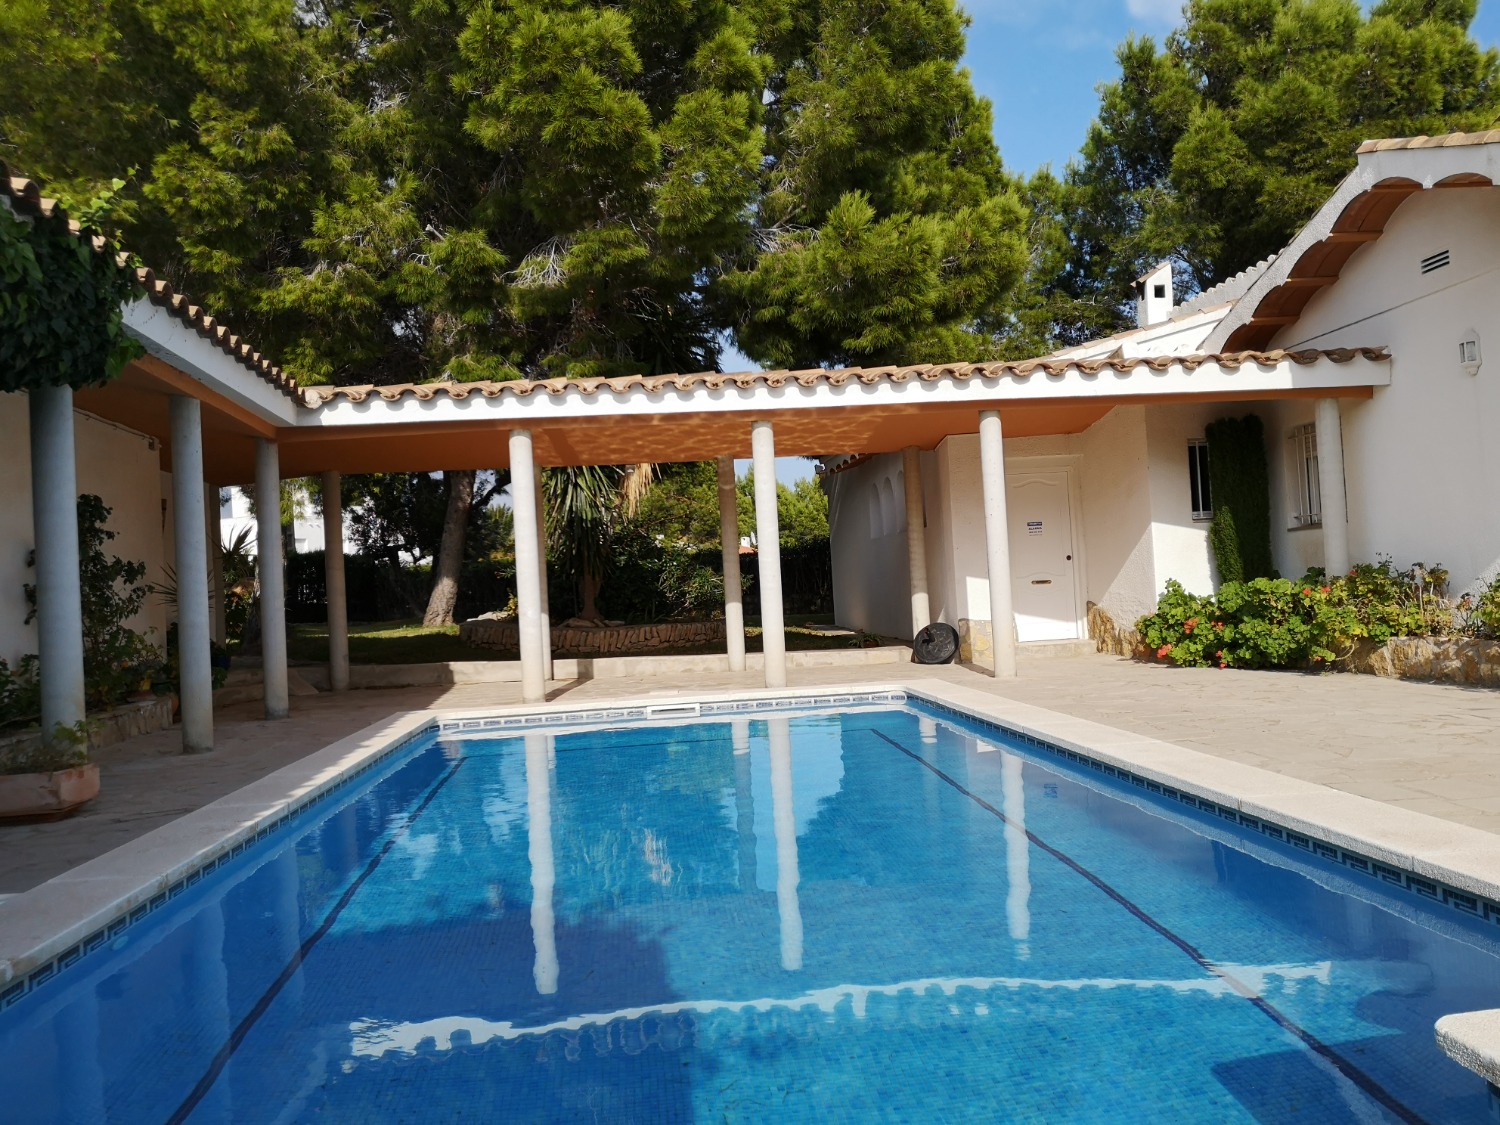 Grande propriété composée de 2 maisons avec une piscine privée